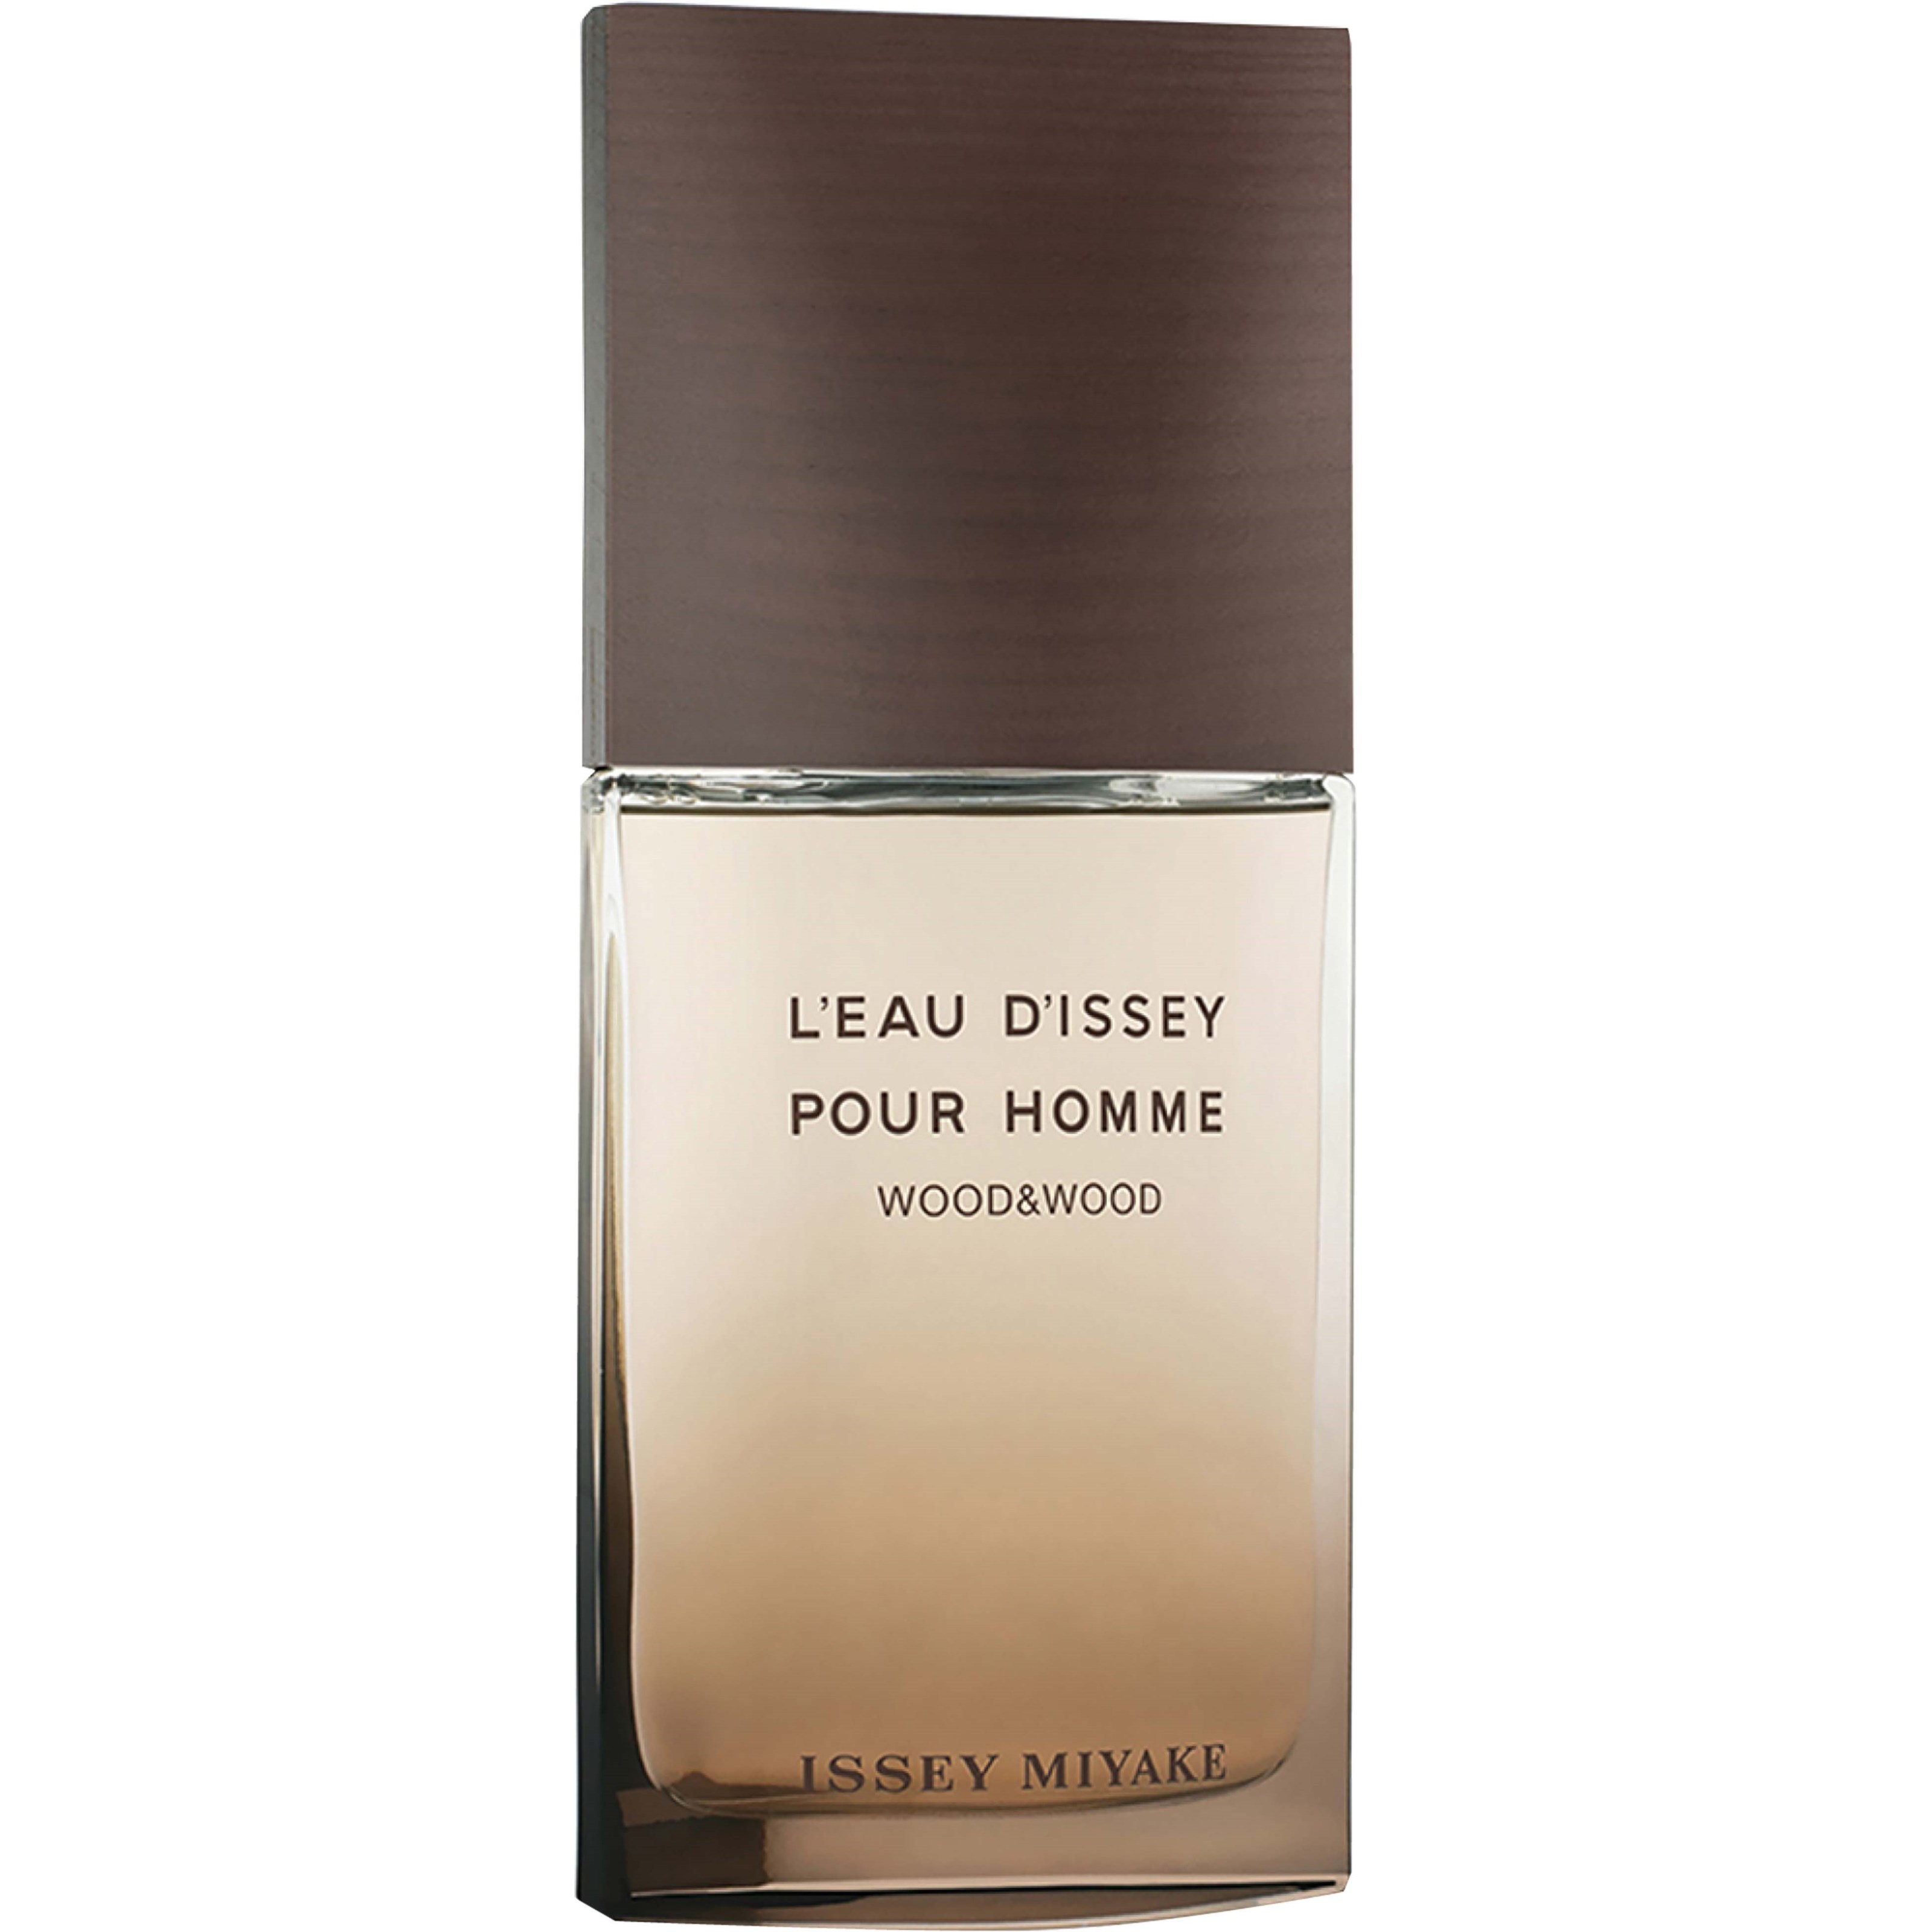 Issey Miyake LEau DIssey Pour Homme Wood & Wood Eau de Parfum Intens